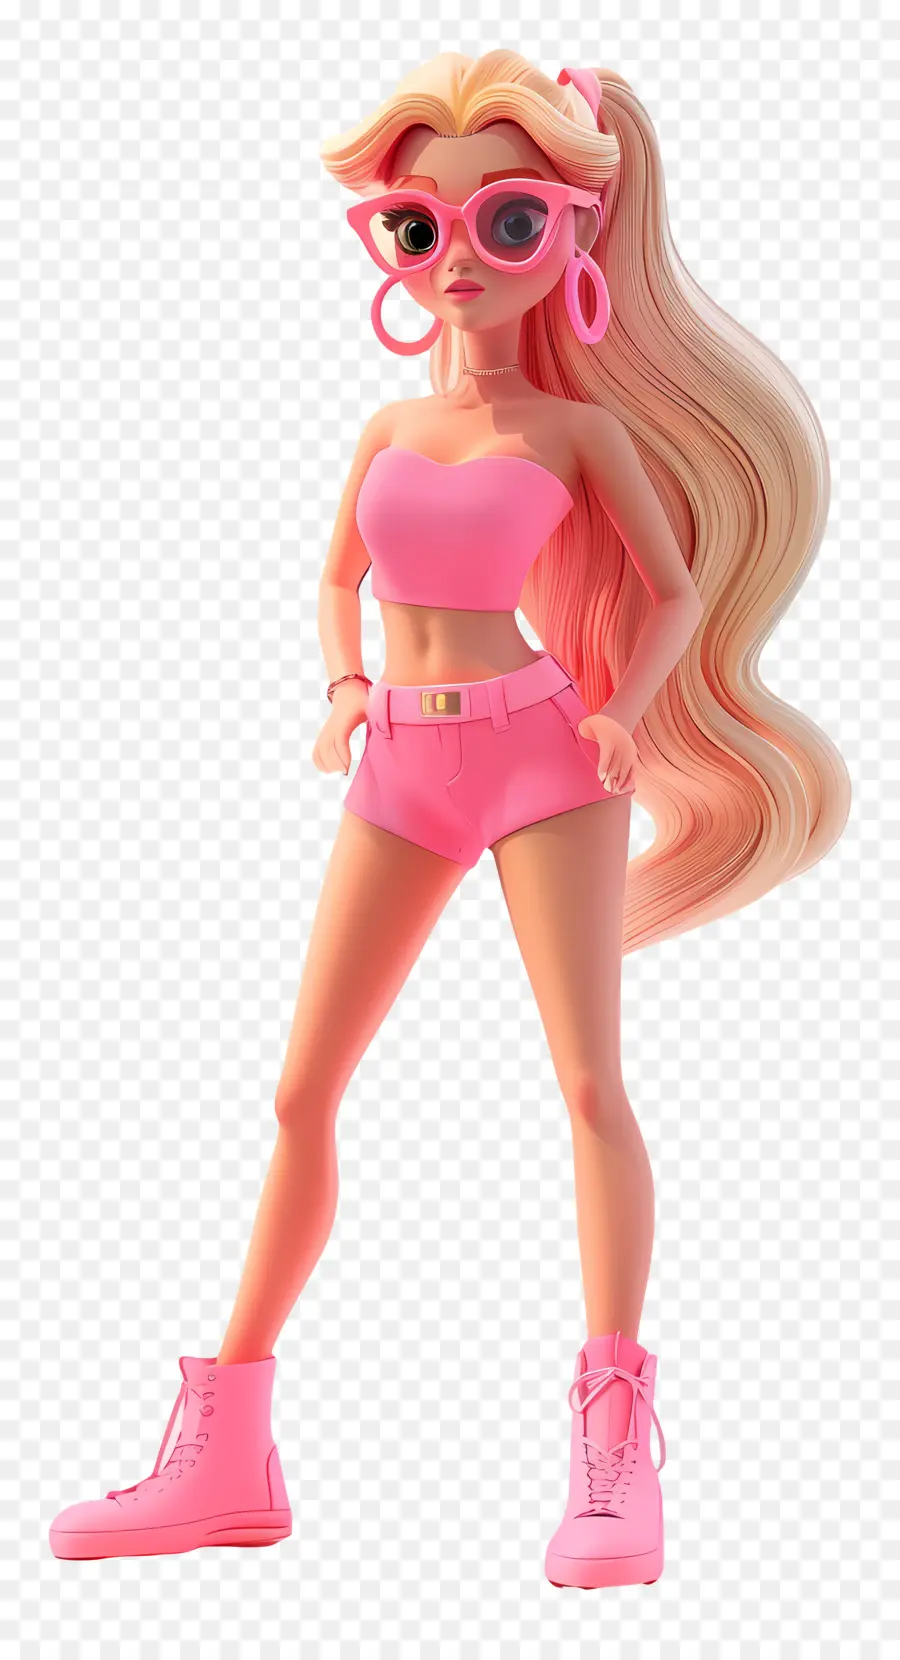 barbie girl 3d rendering female figure blonde hair pink outfit